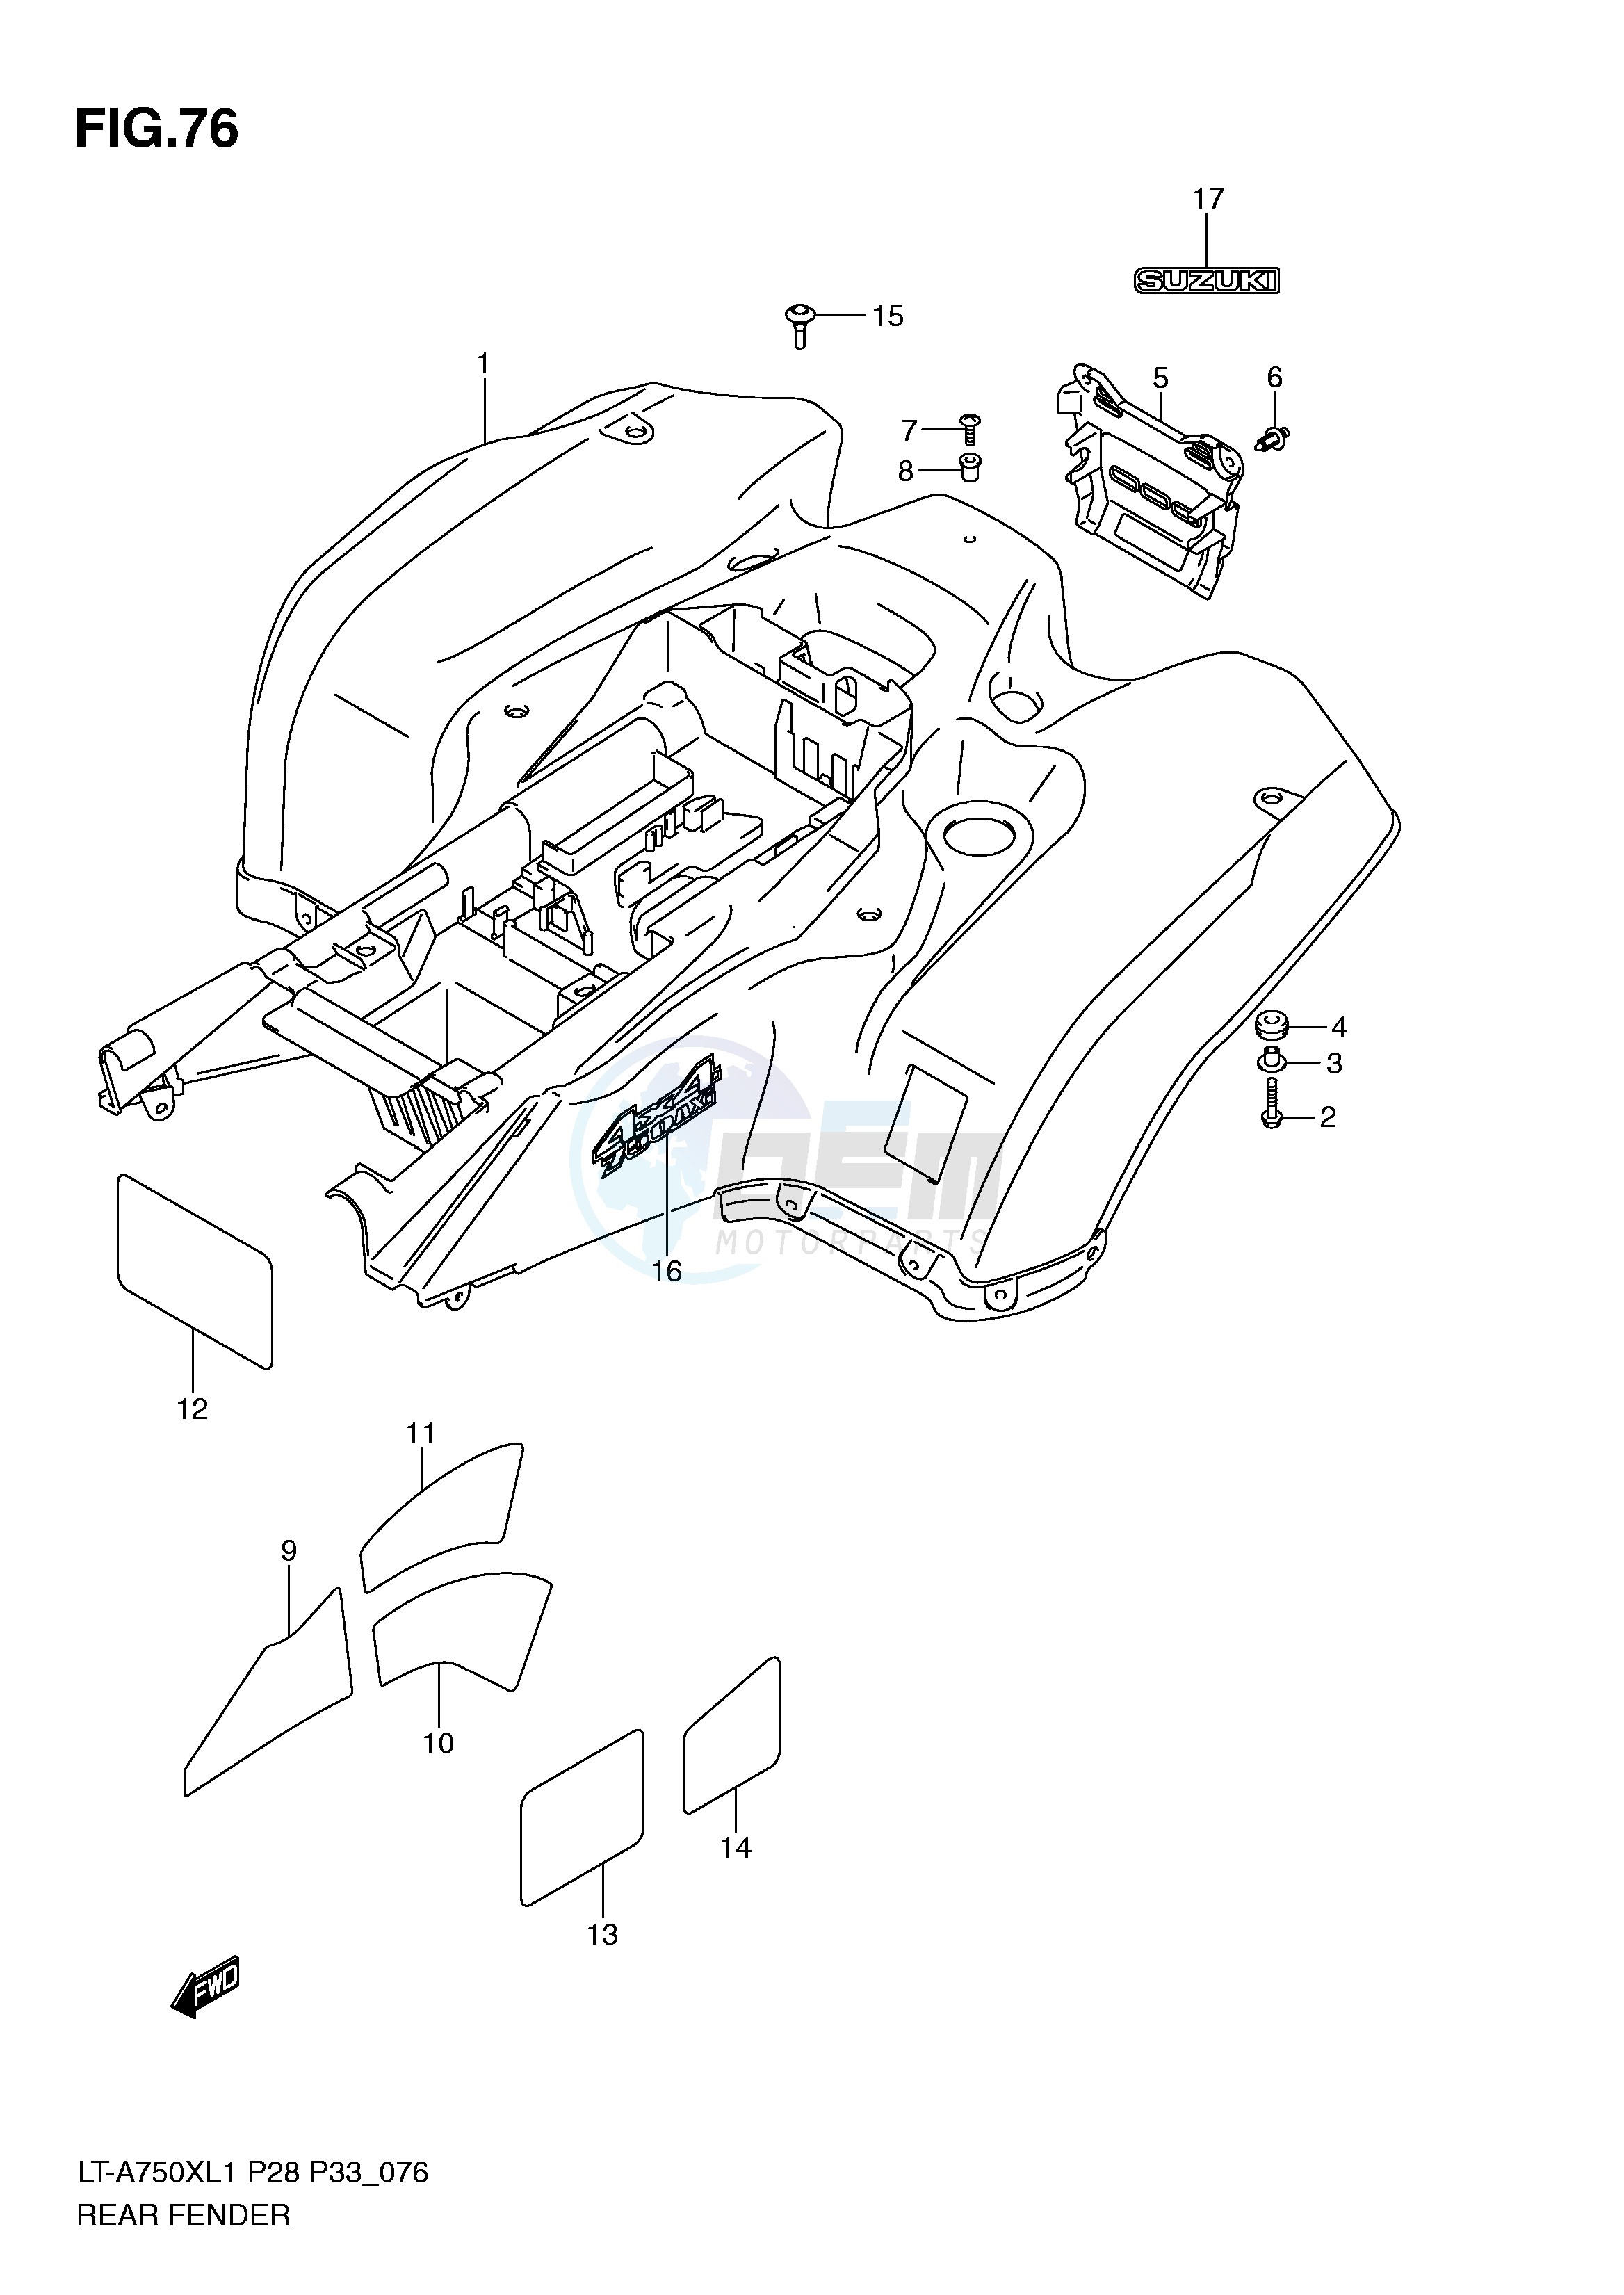 REAR FENDER (LT-A750XZL1 P28) blueprint